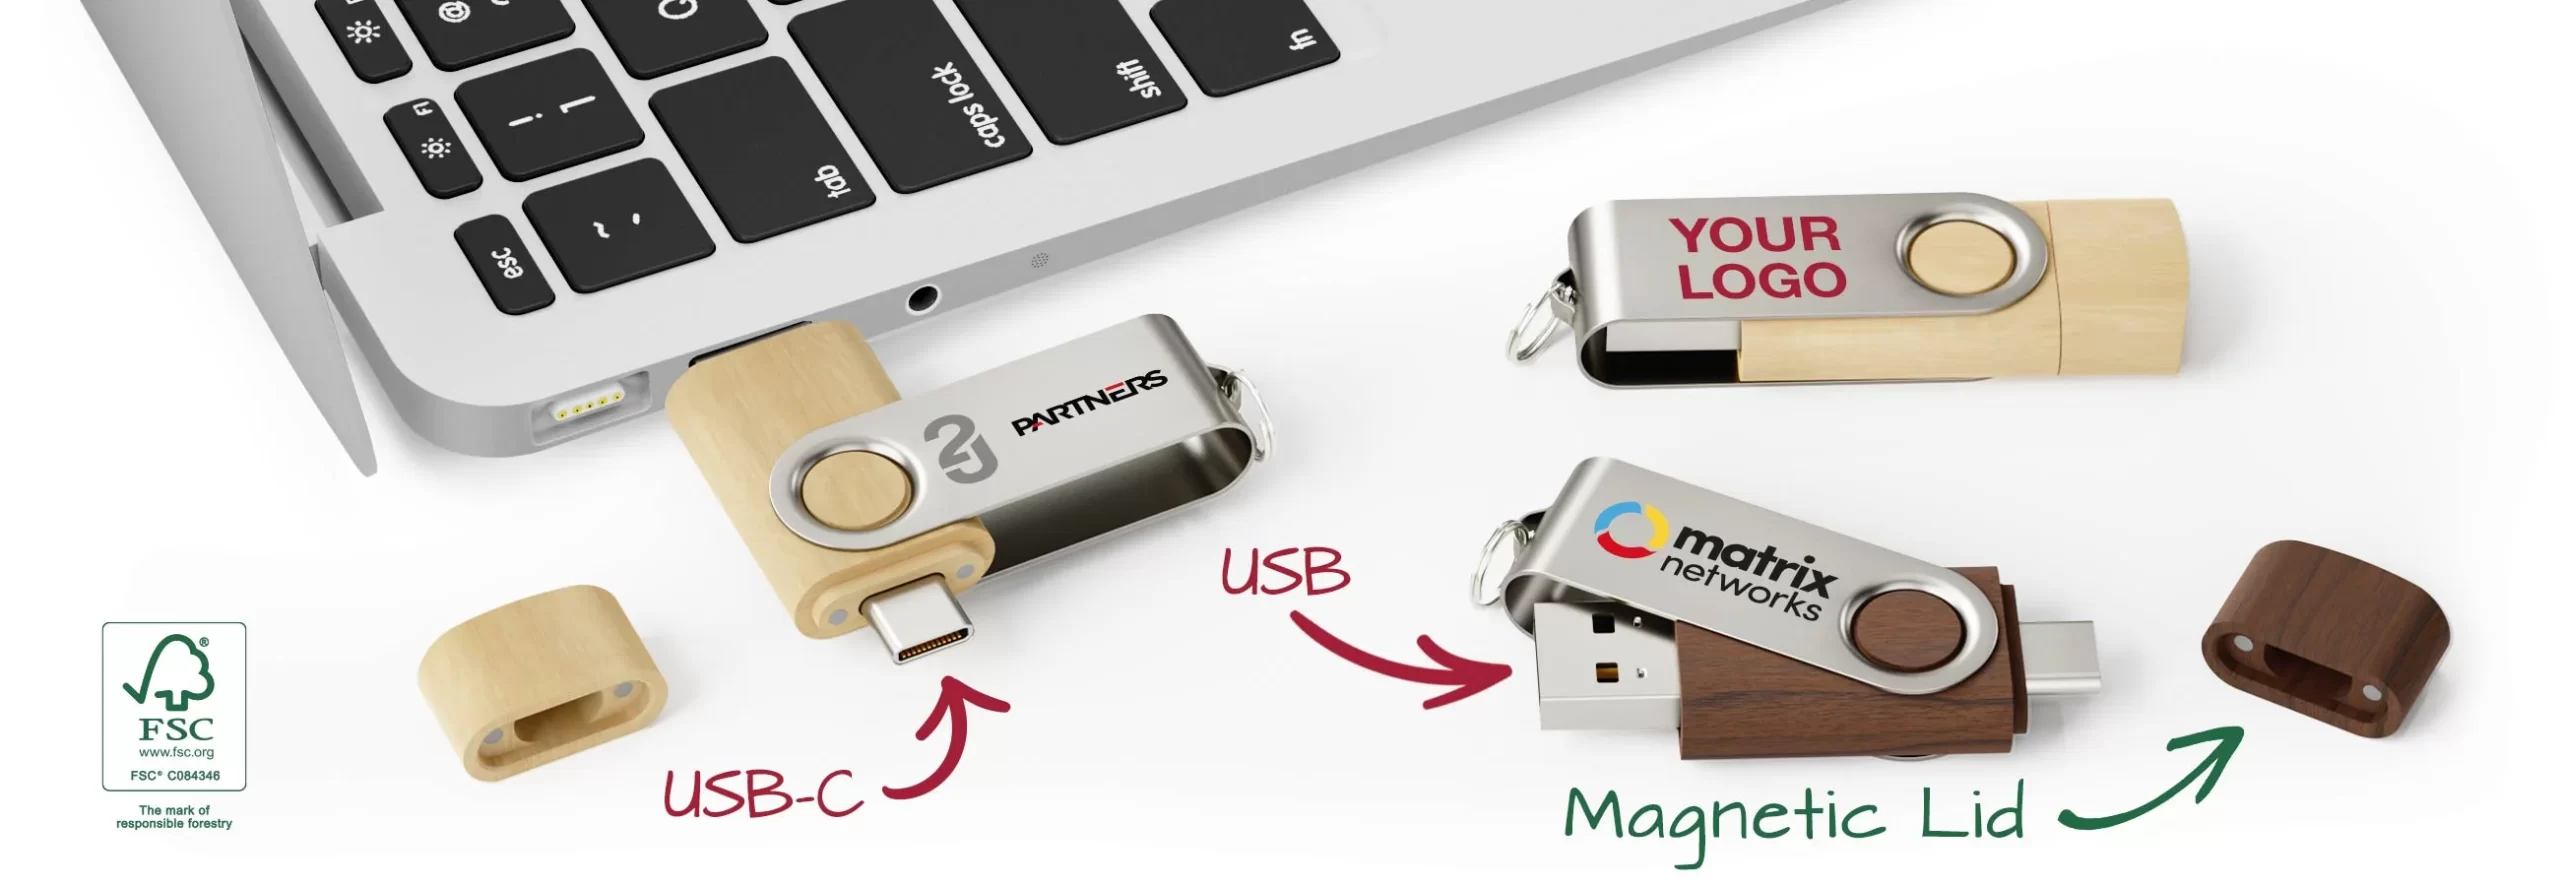 Unidade flash USB rotativa com Type-c